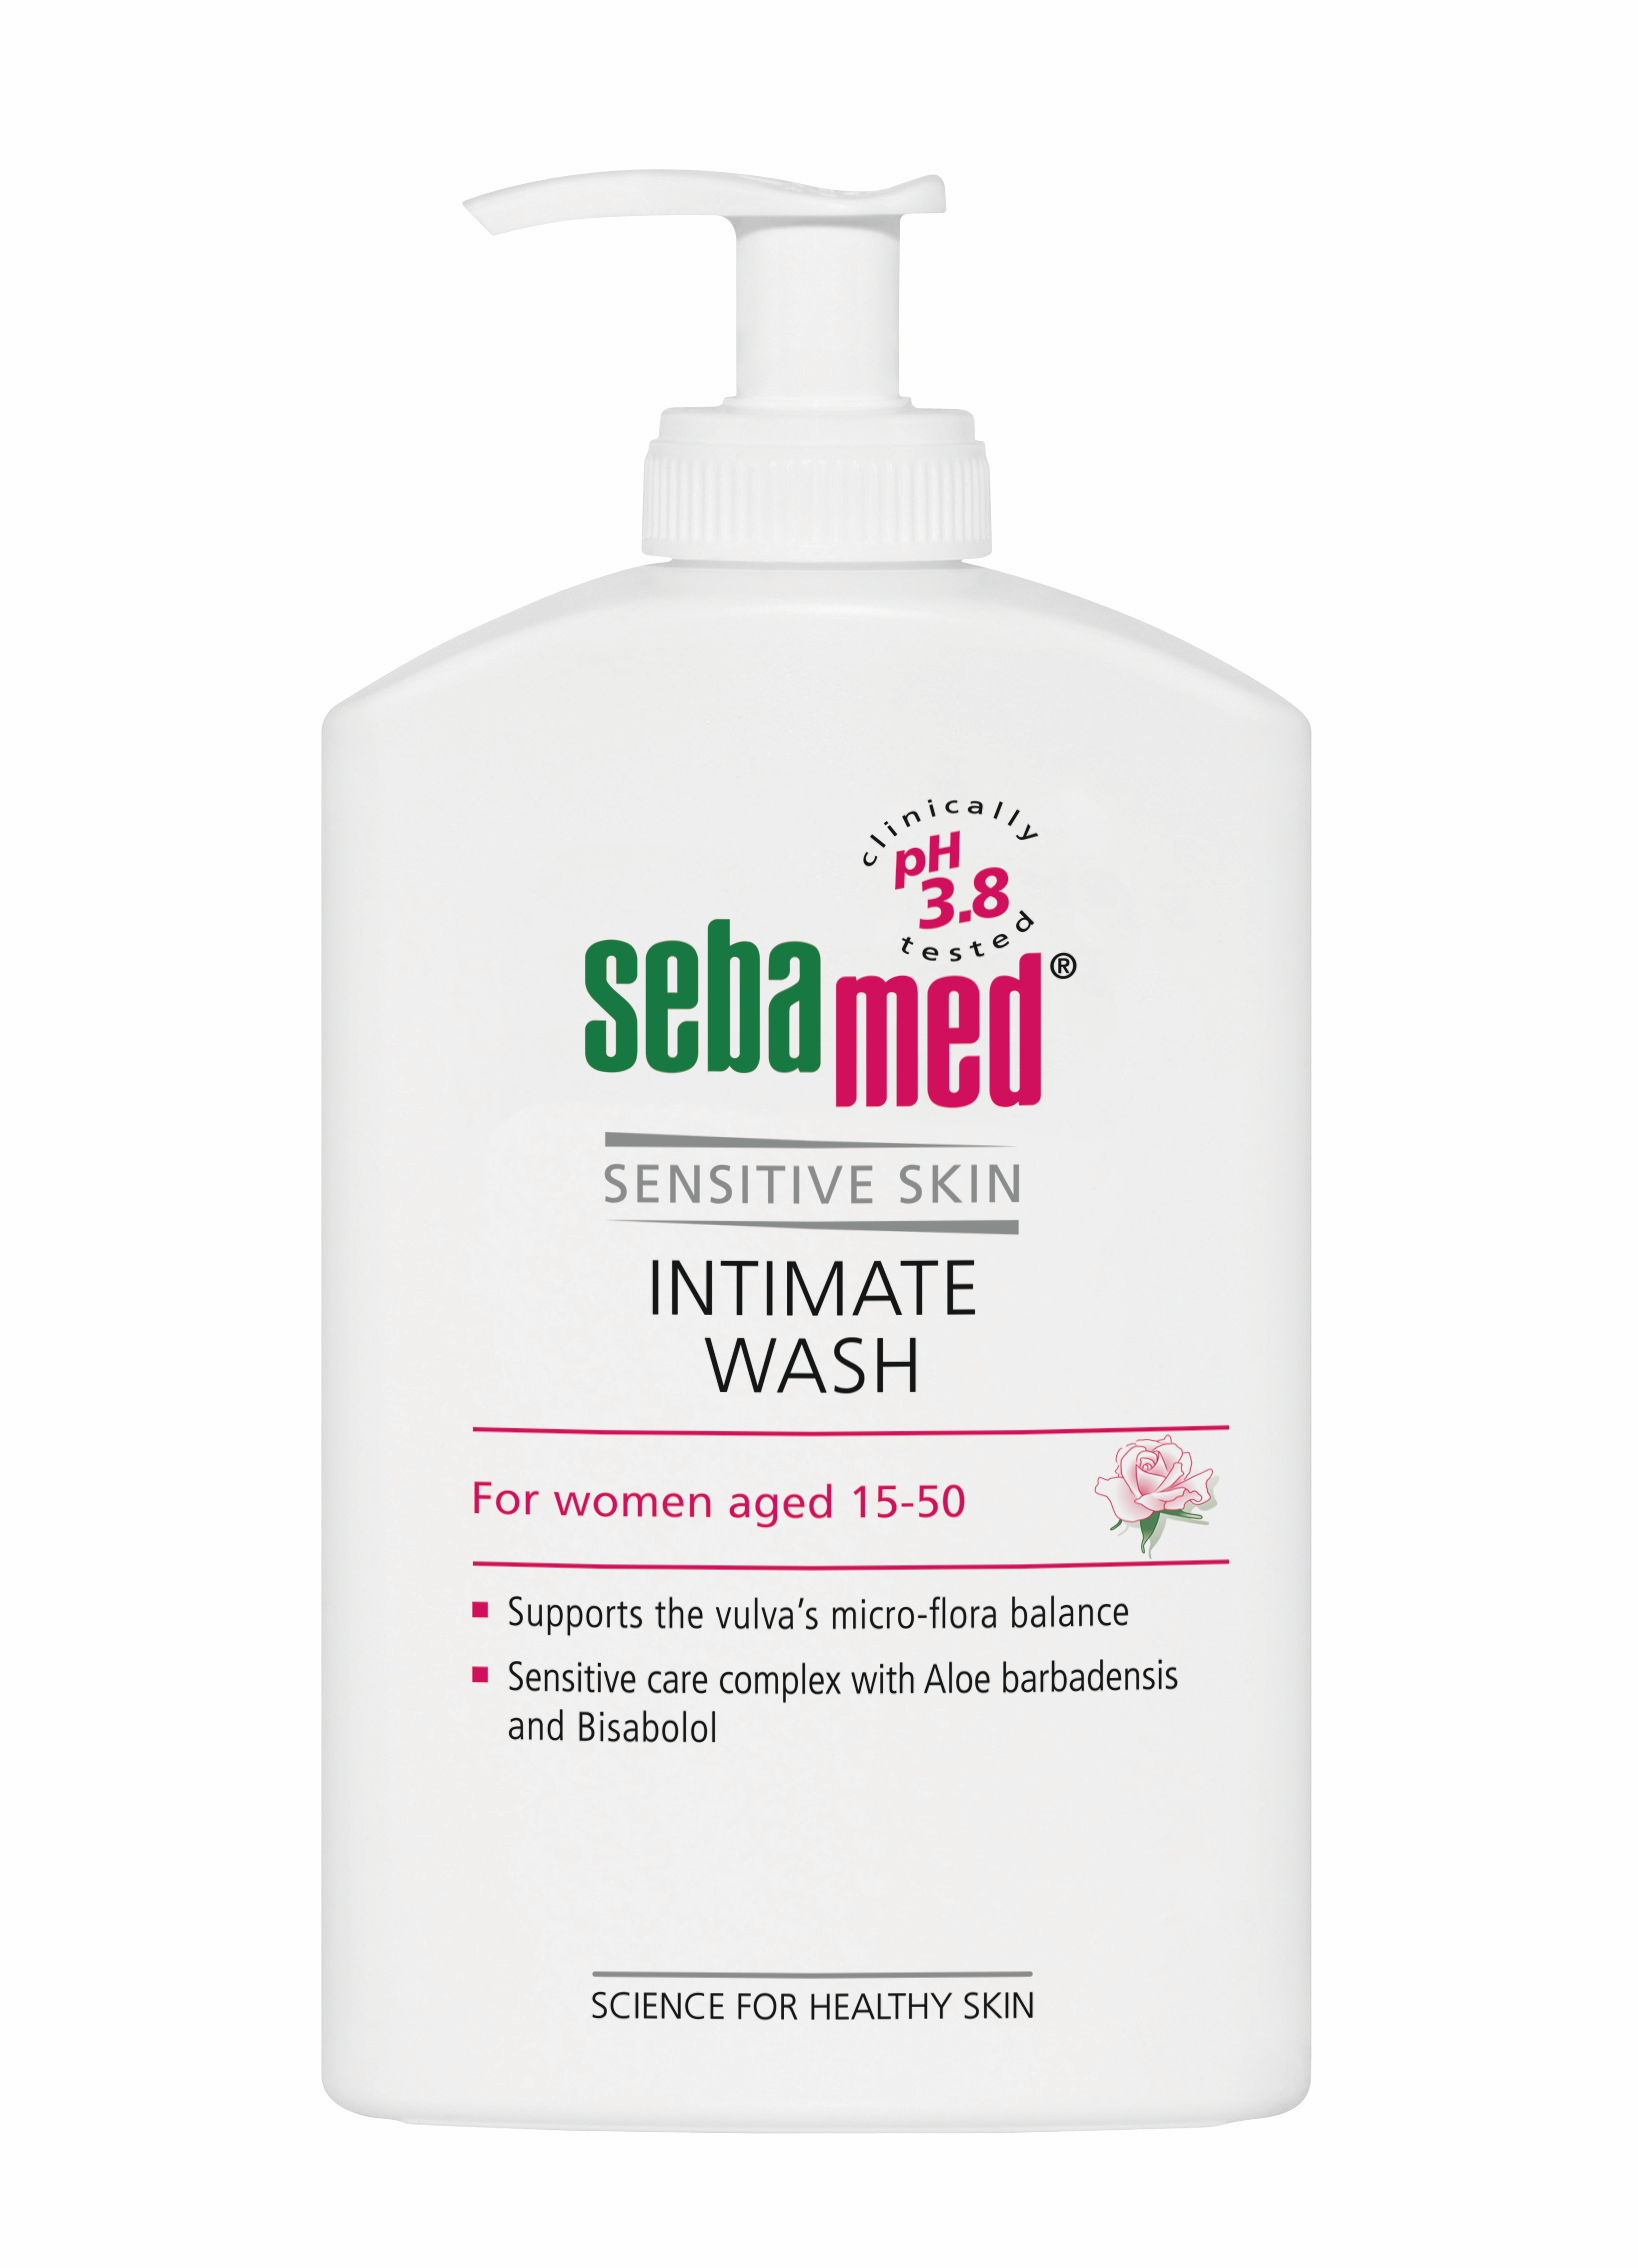 Igienă intimă - Sebamed Sensitive Skin Gel dermatologic pentru igiena intimă feminină (15-50 ani) * 400 ml, clinicafarm.ro